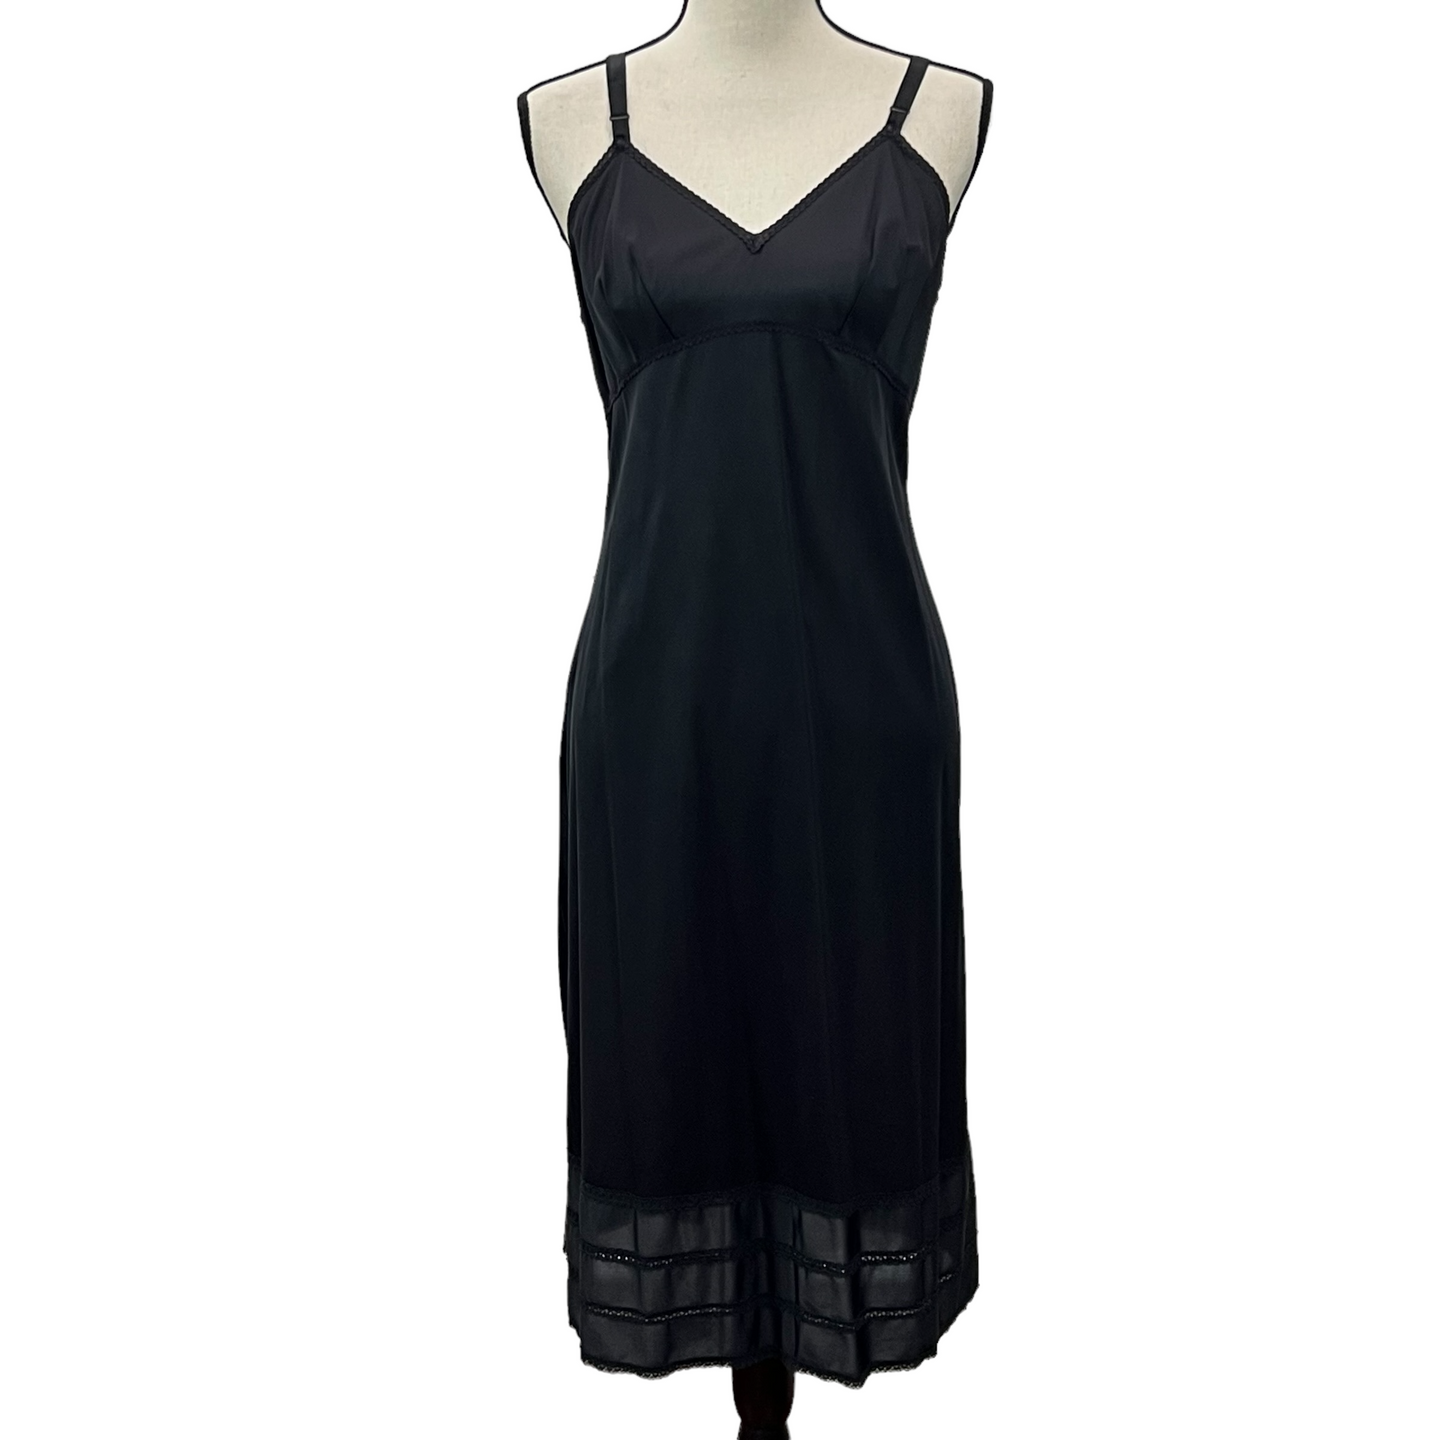 Vintage Black Full Dress Slip 38 Tall